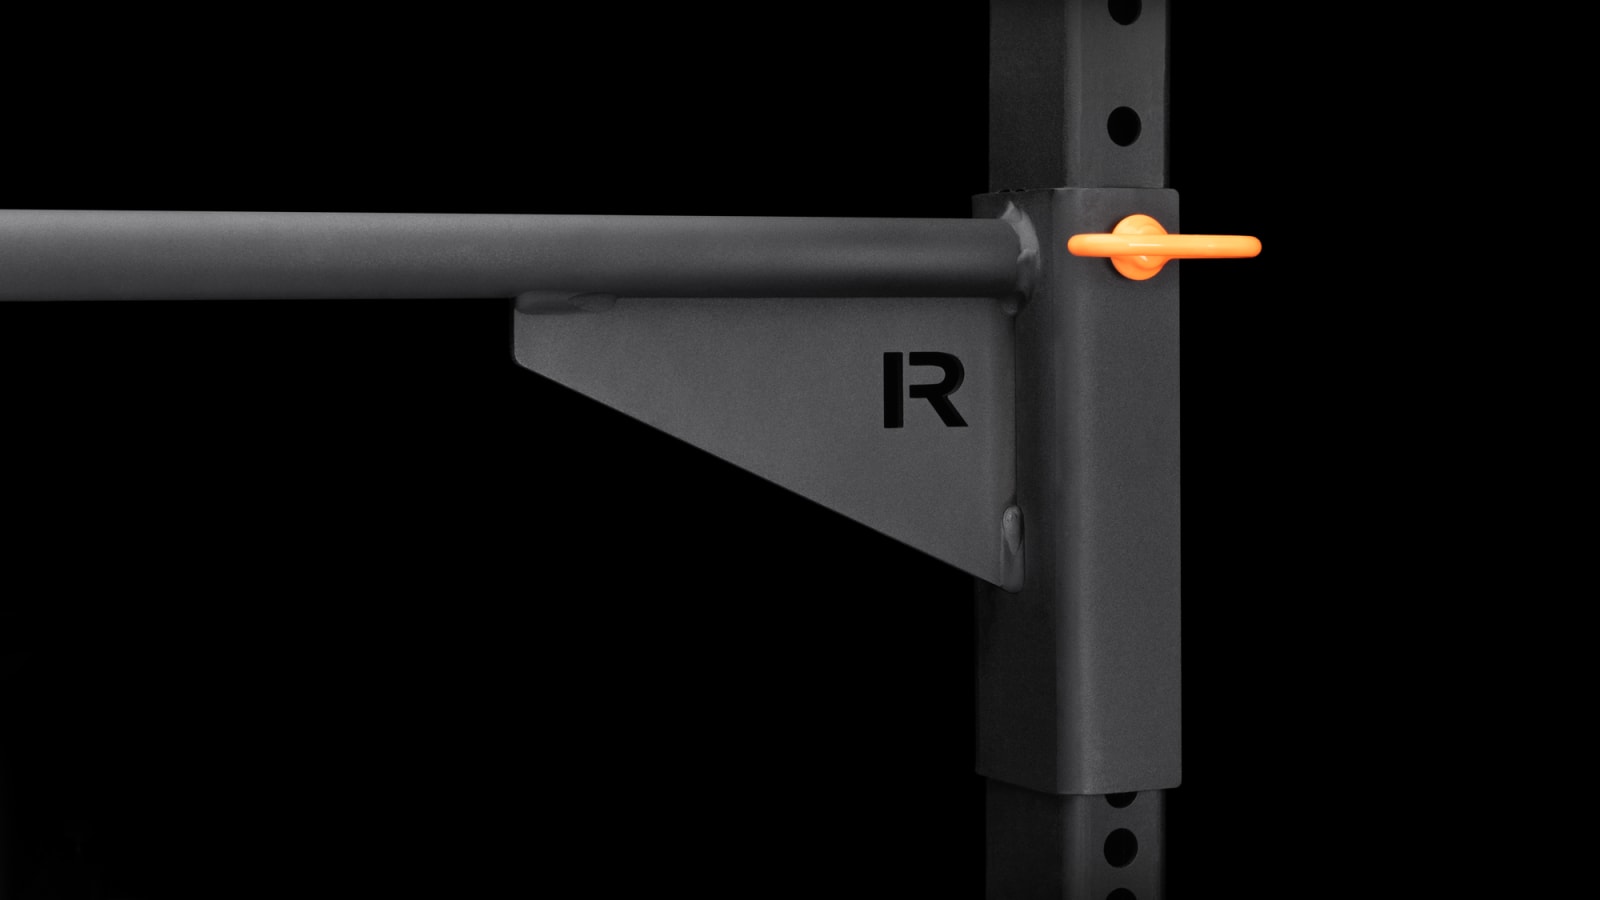 Rogue Infinity Socket Pull-up Bar - Modular Pull-Up Bars